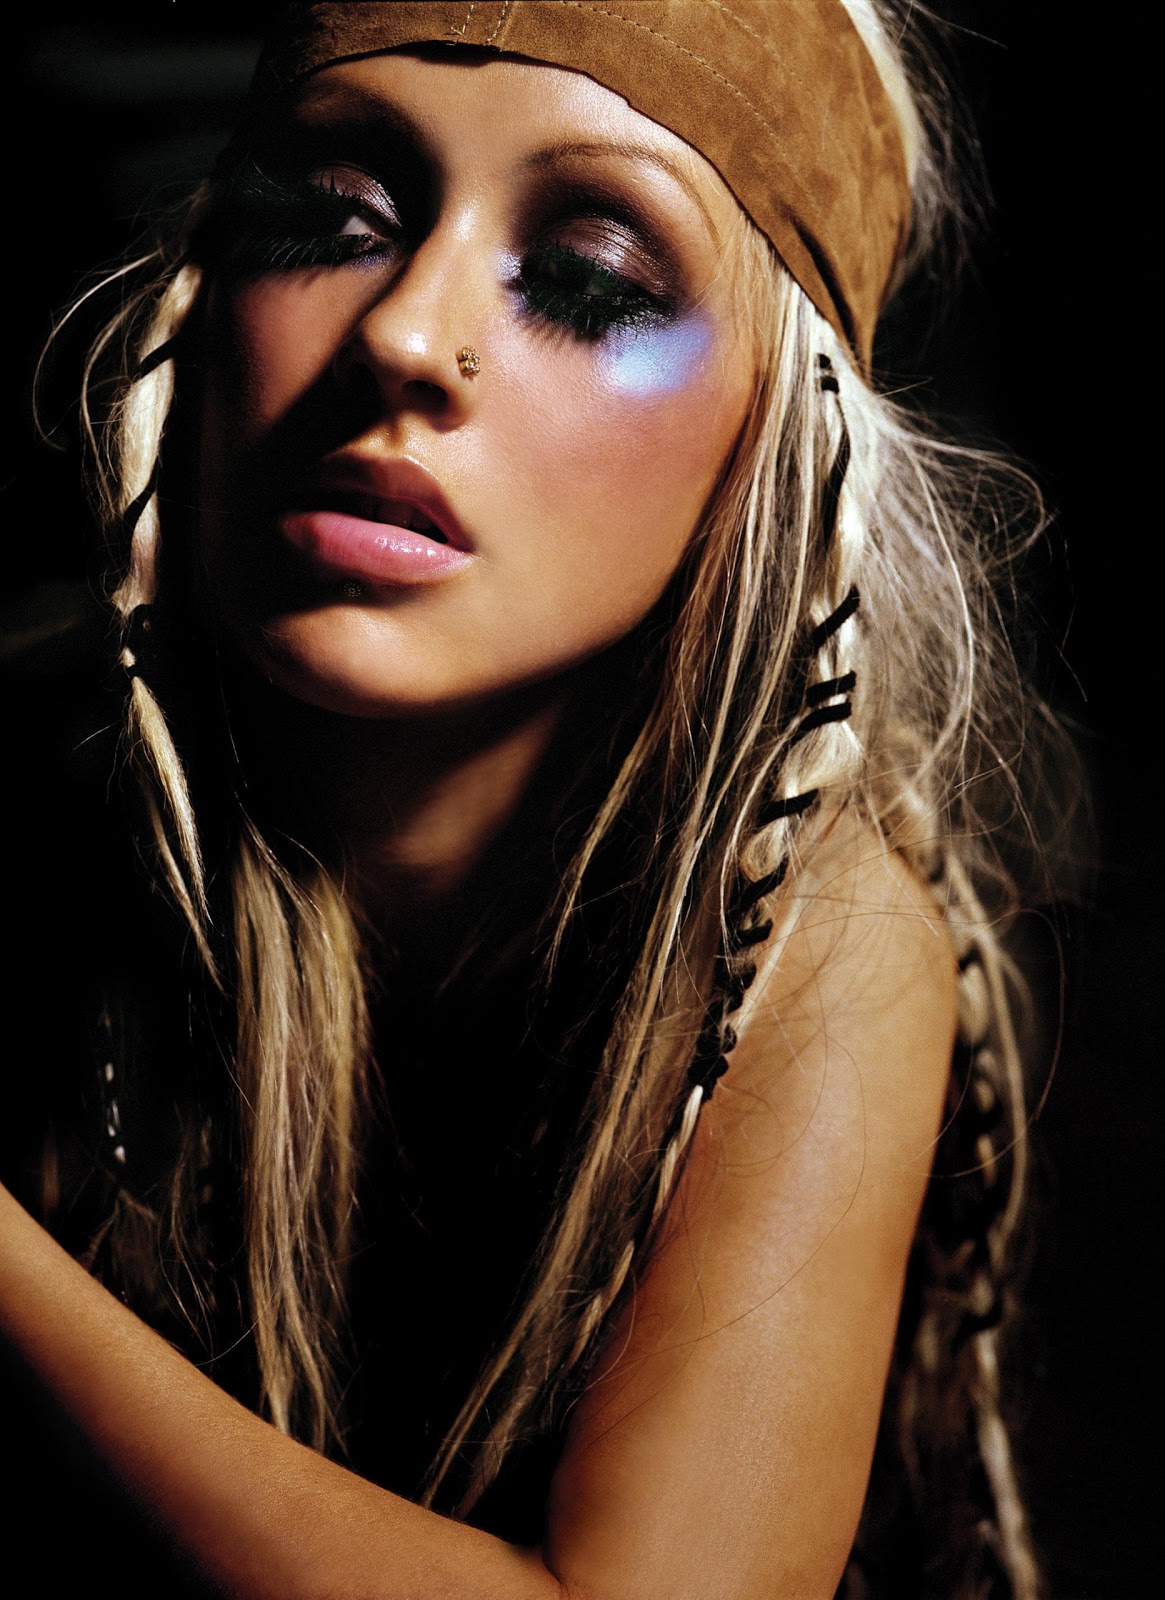 http://4.bp.blogspot.com/-5UYPhLThJtc/TbqkMrIjvpI/AAAAAAAAAQY/JxUNTZZ0ACc/s1600/Christina+Aguilera+-+Stripped+Album+Promos+-+06.jpg